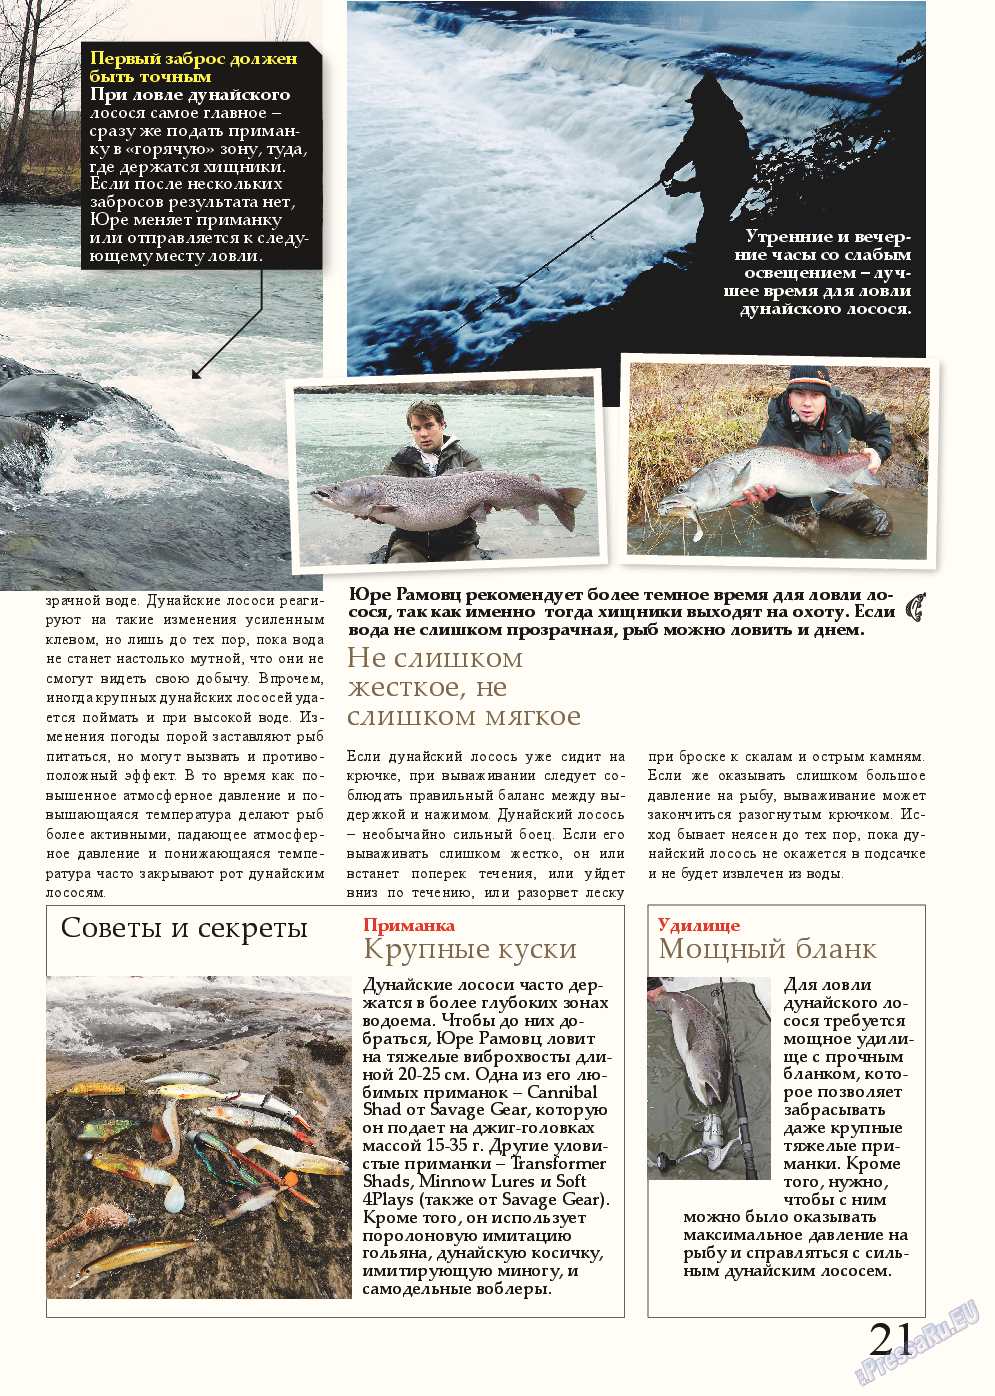 Рыбалка Plus, журнал. 2015 №2 стр.21